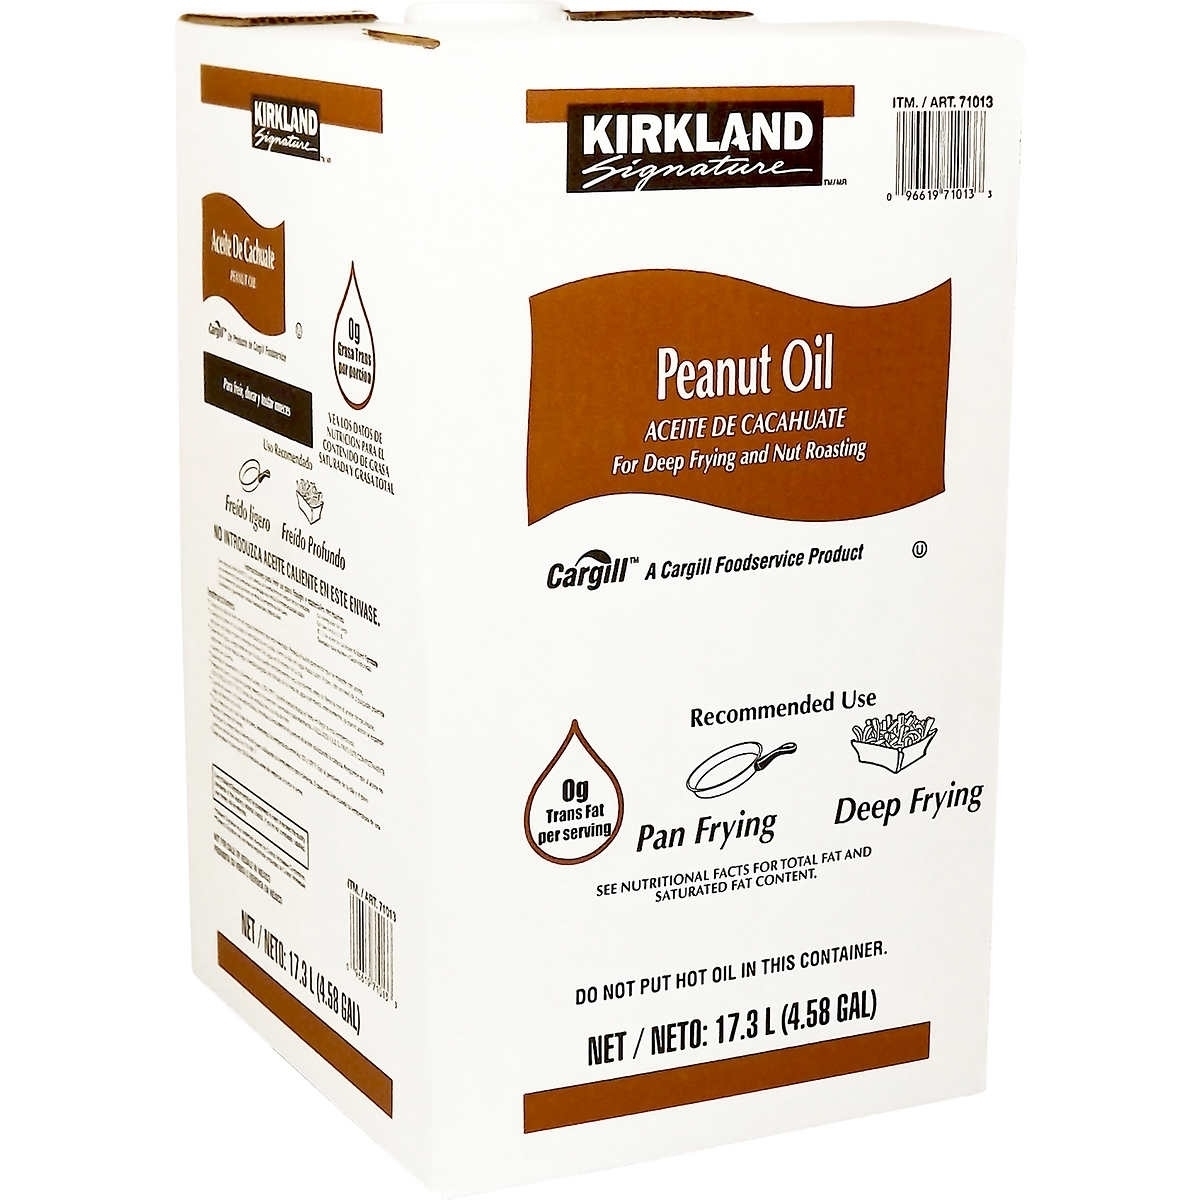 Kirkland Signature Peanut Oil, 35 Pounds